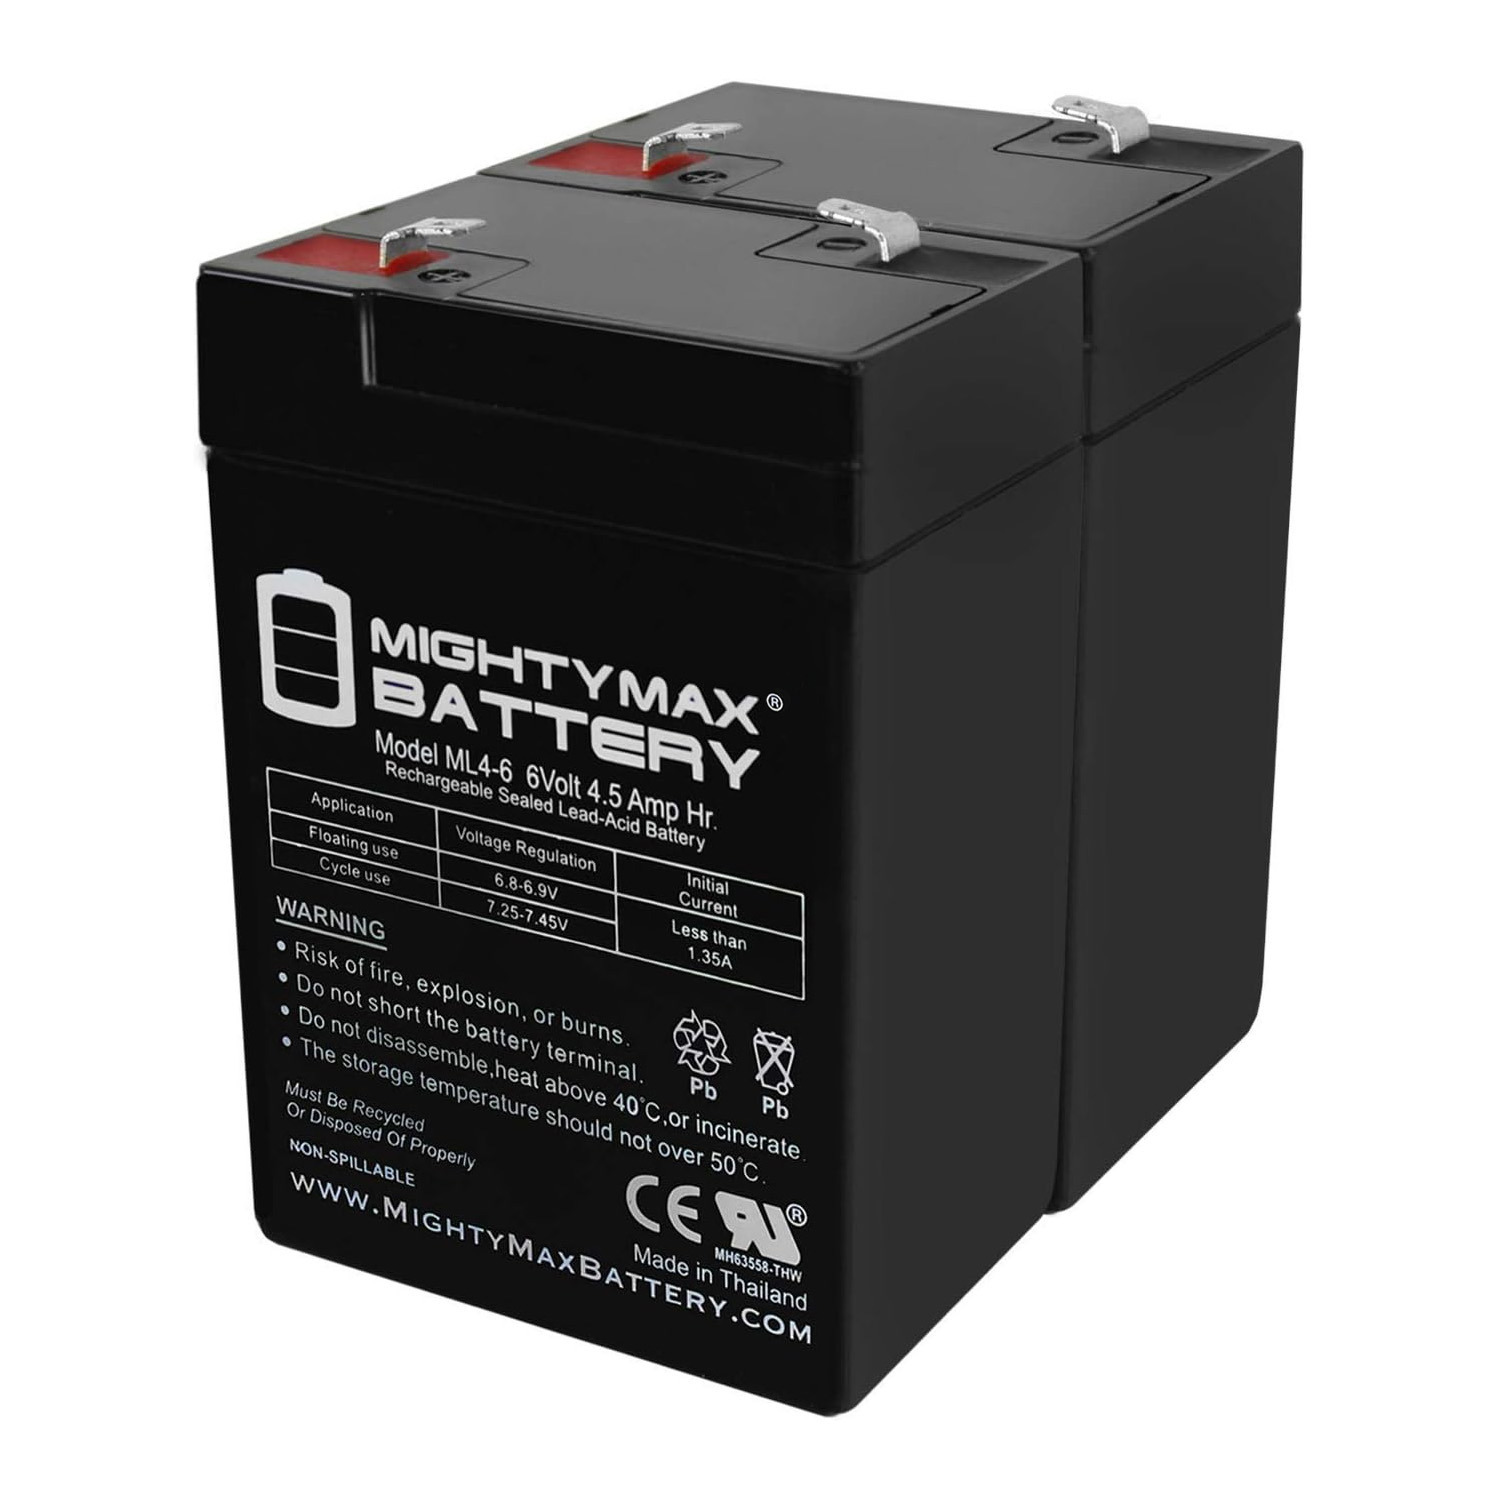 6V 4.5AH SLA Replacement Battery for Emergi-Lite KSM272 - 2 Pack